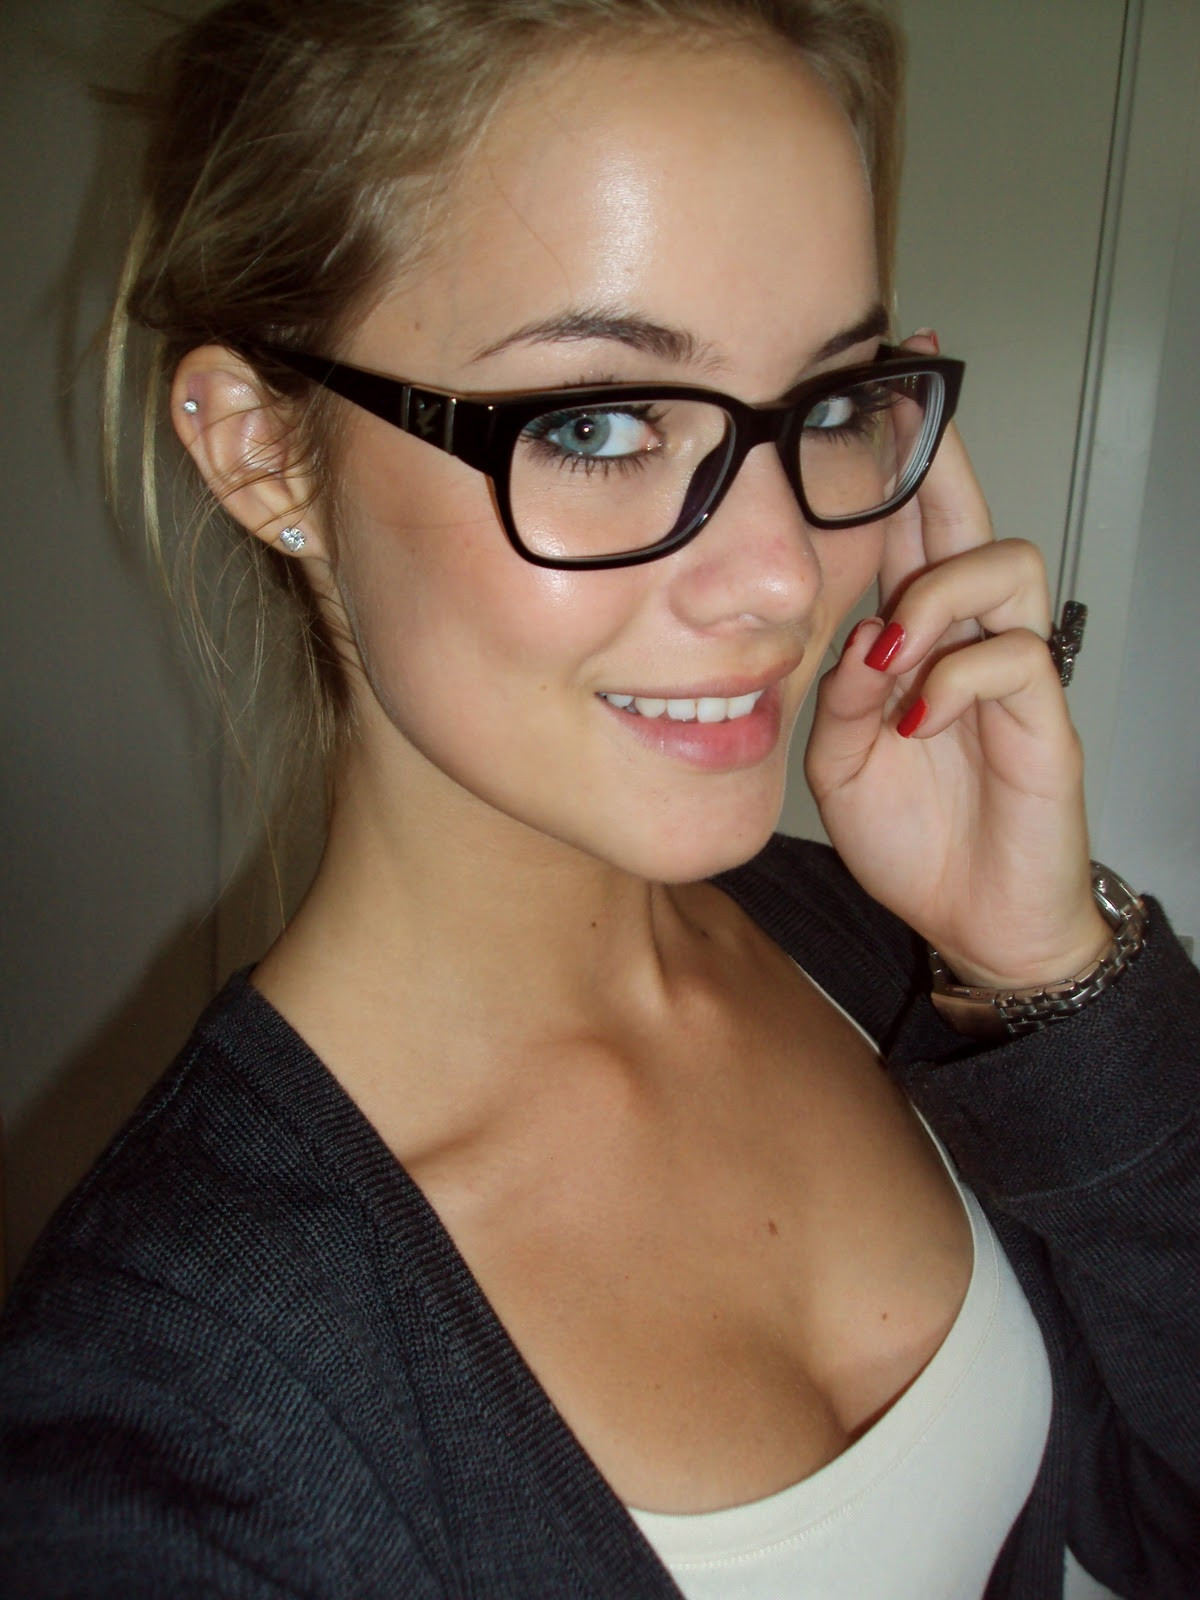 Glasses girl in school porn